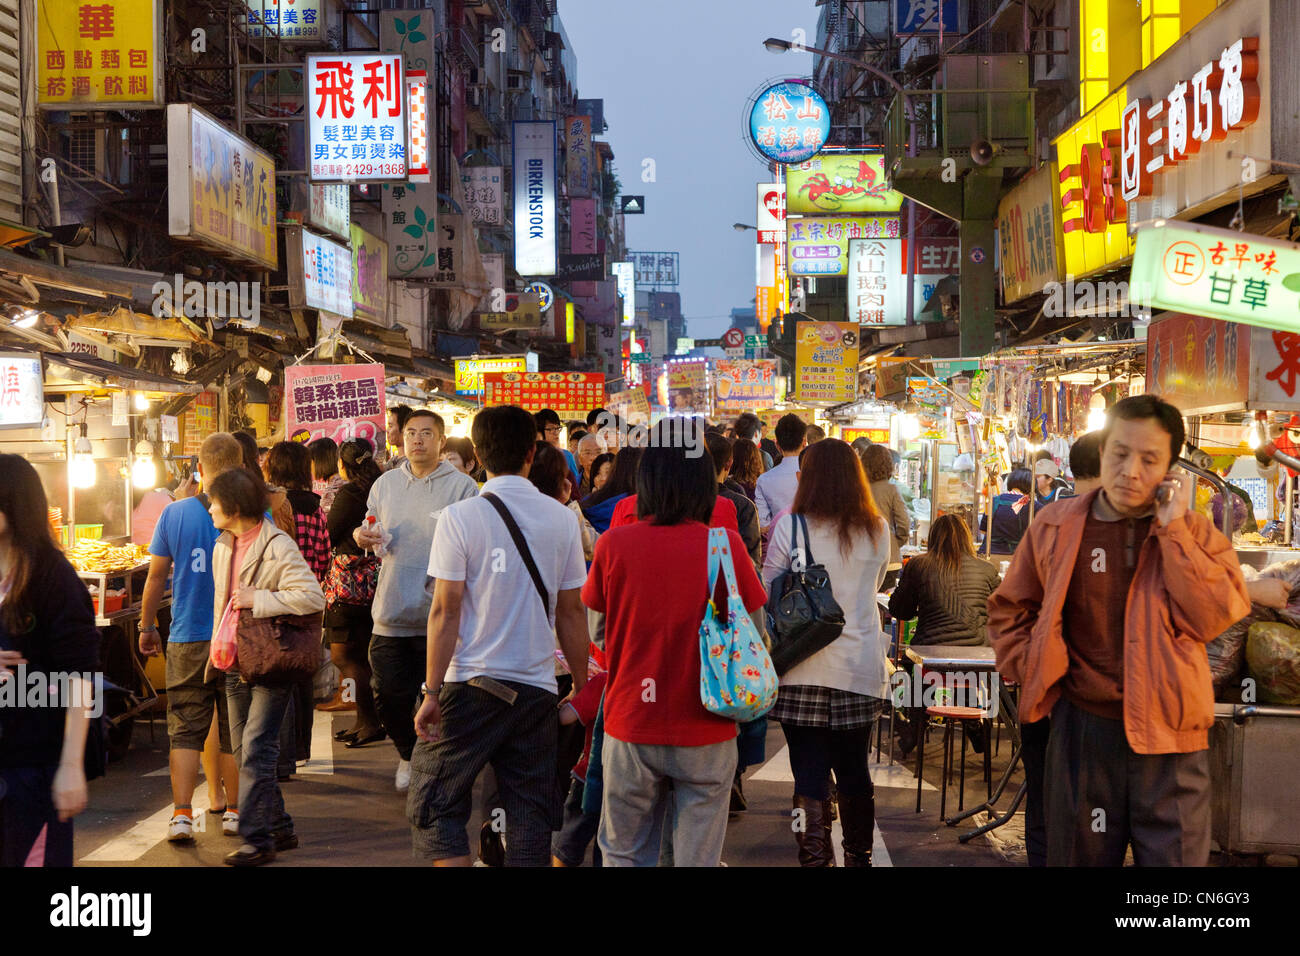 Shoppers in Keelung (Jilong) Temple Plaza Night Market, Miaokou Yeshi, Keelung Taiwan. JMH5787 Stock Photo